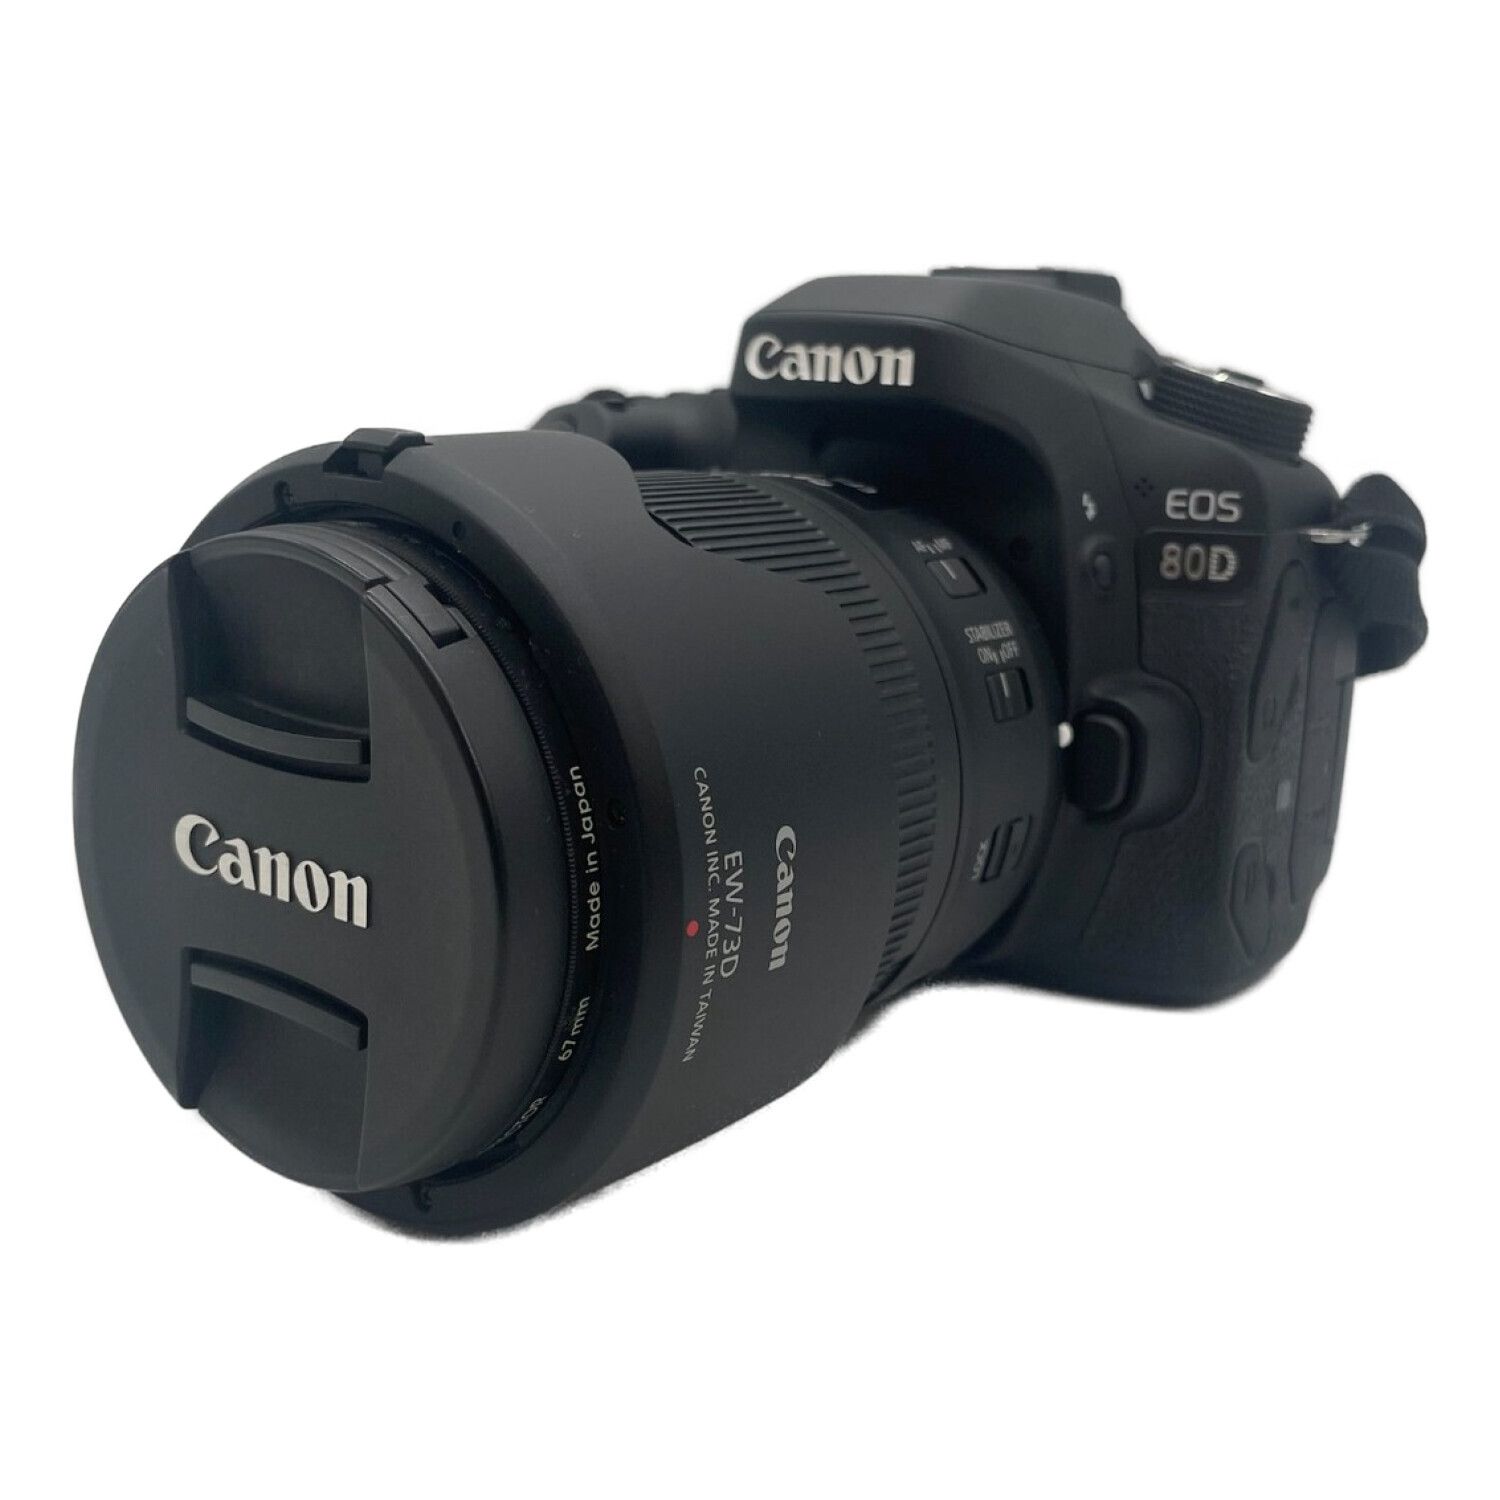 CANON (キャノン) 一眼レフカメラ EOS 80D 2580万画素(総画素